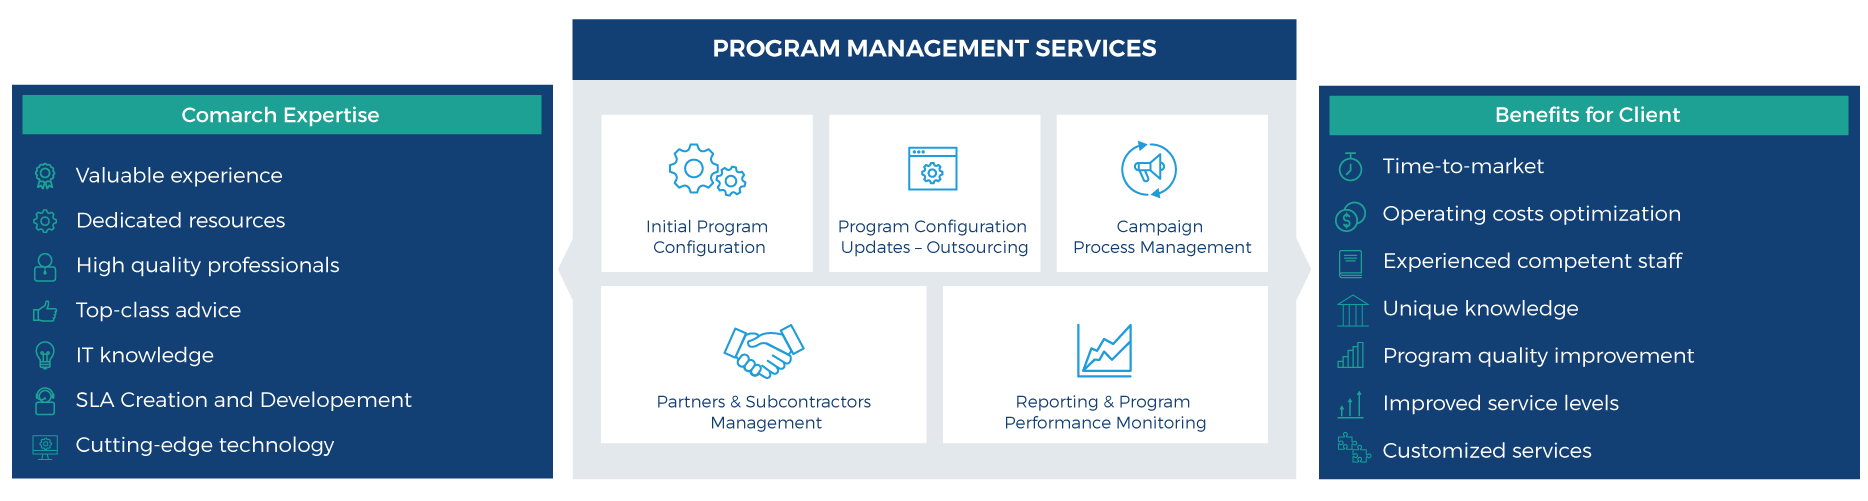 program management services